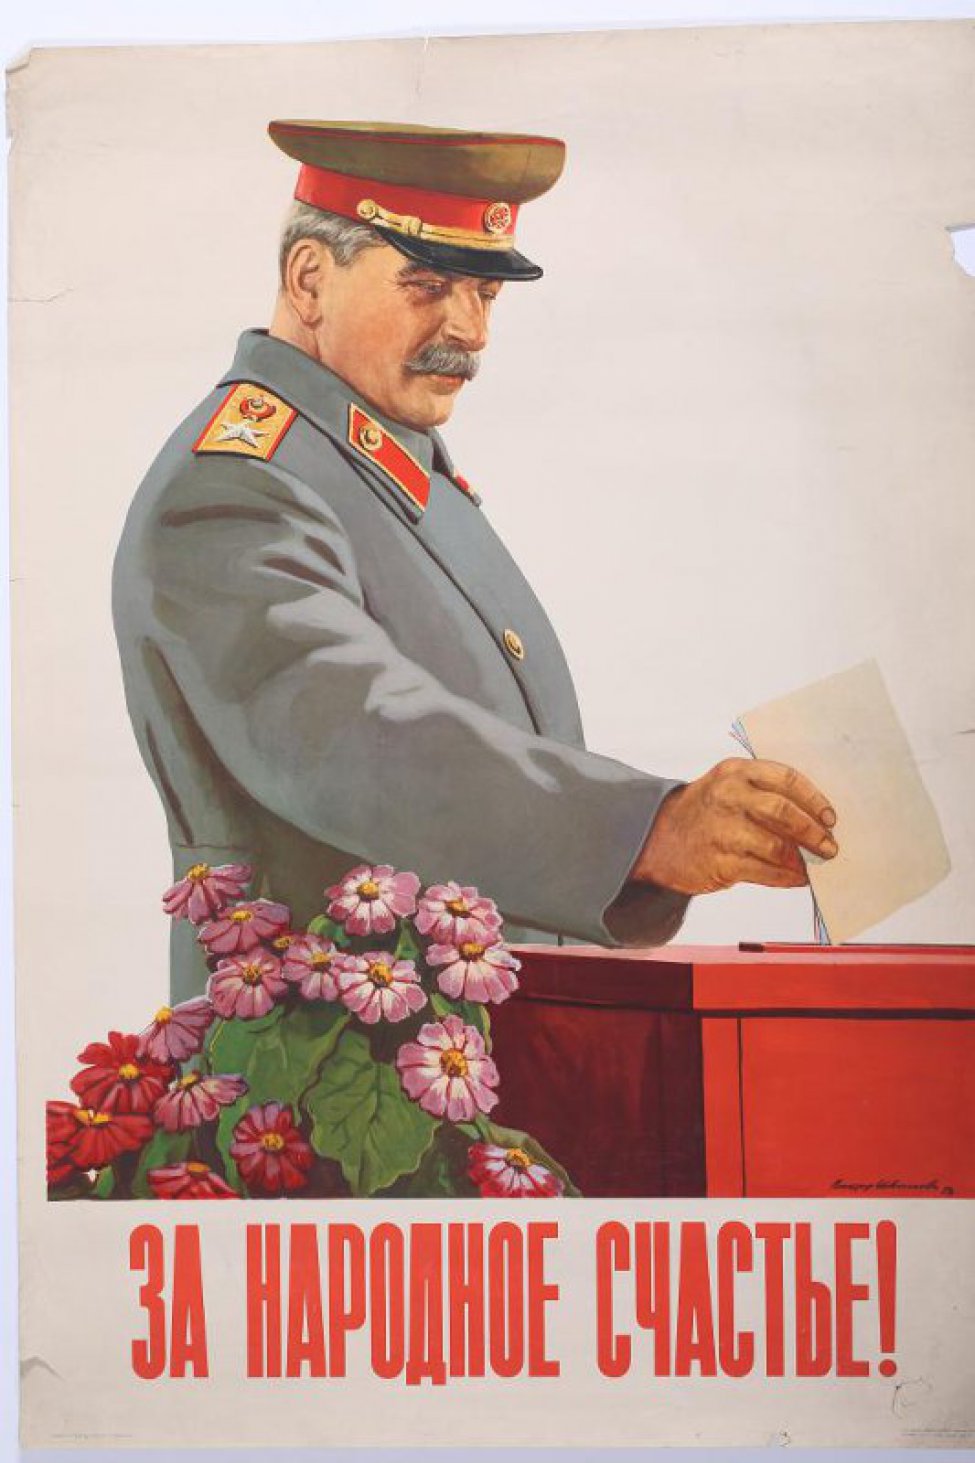 Изображено: И.В.Сталин опускает бюллетень в избирательную урну. Справа внизу " Виктор Иванов 50г."